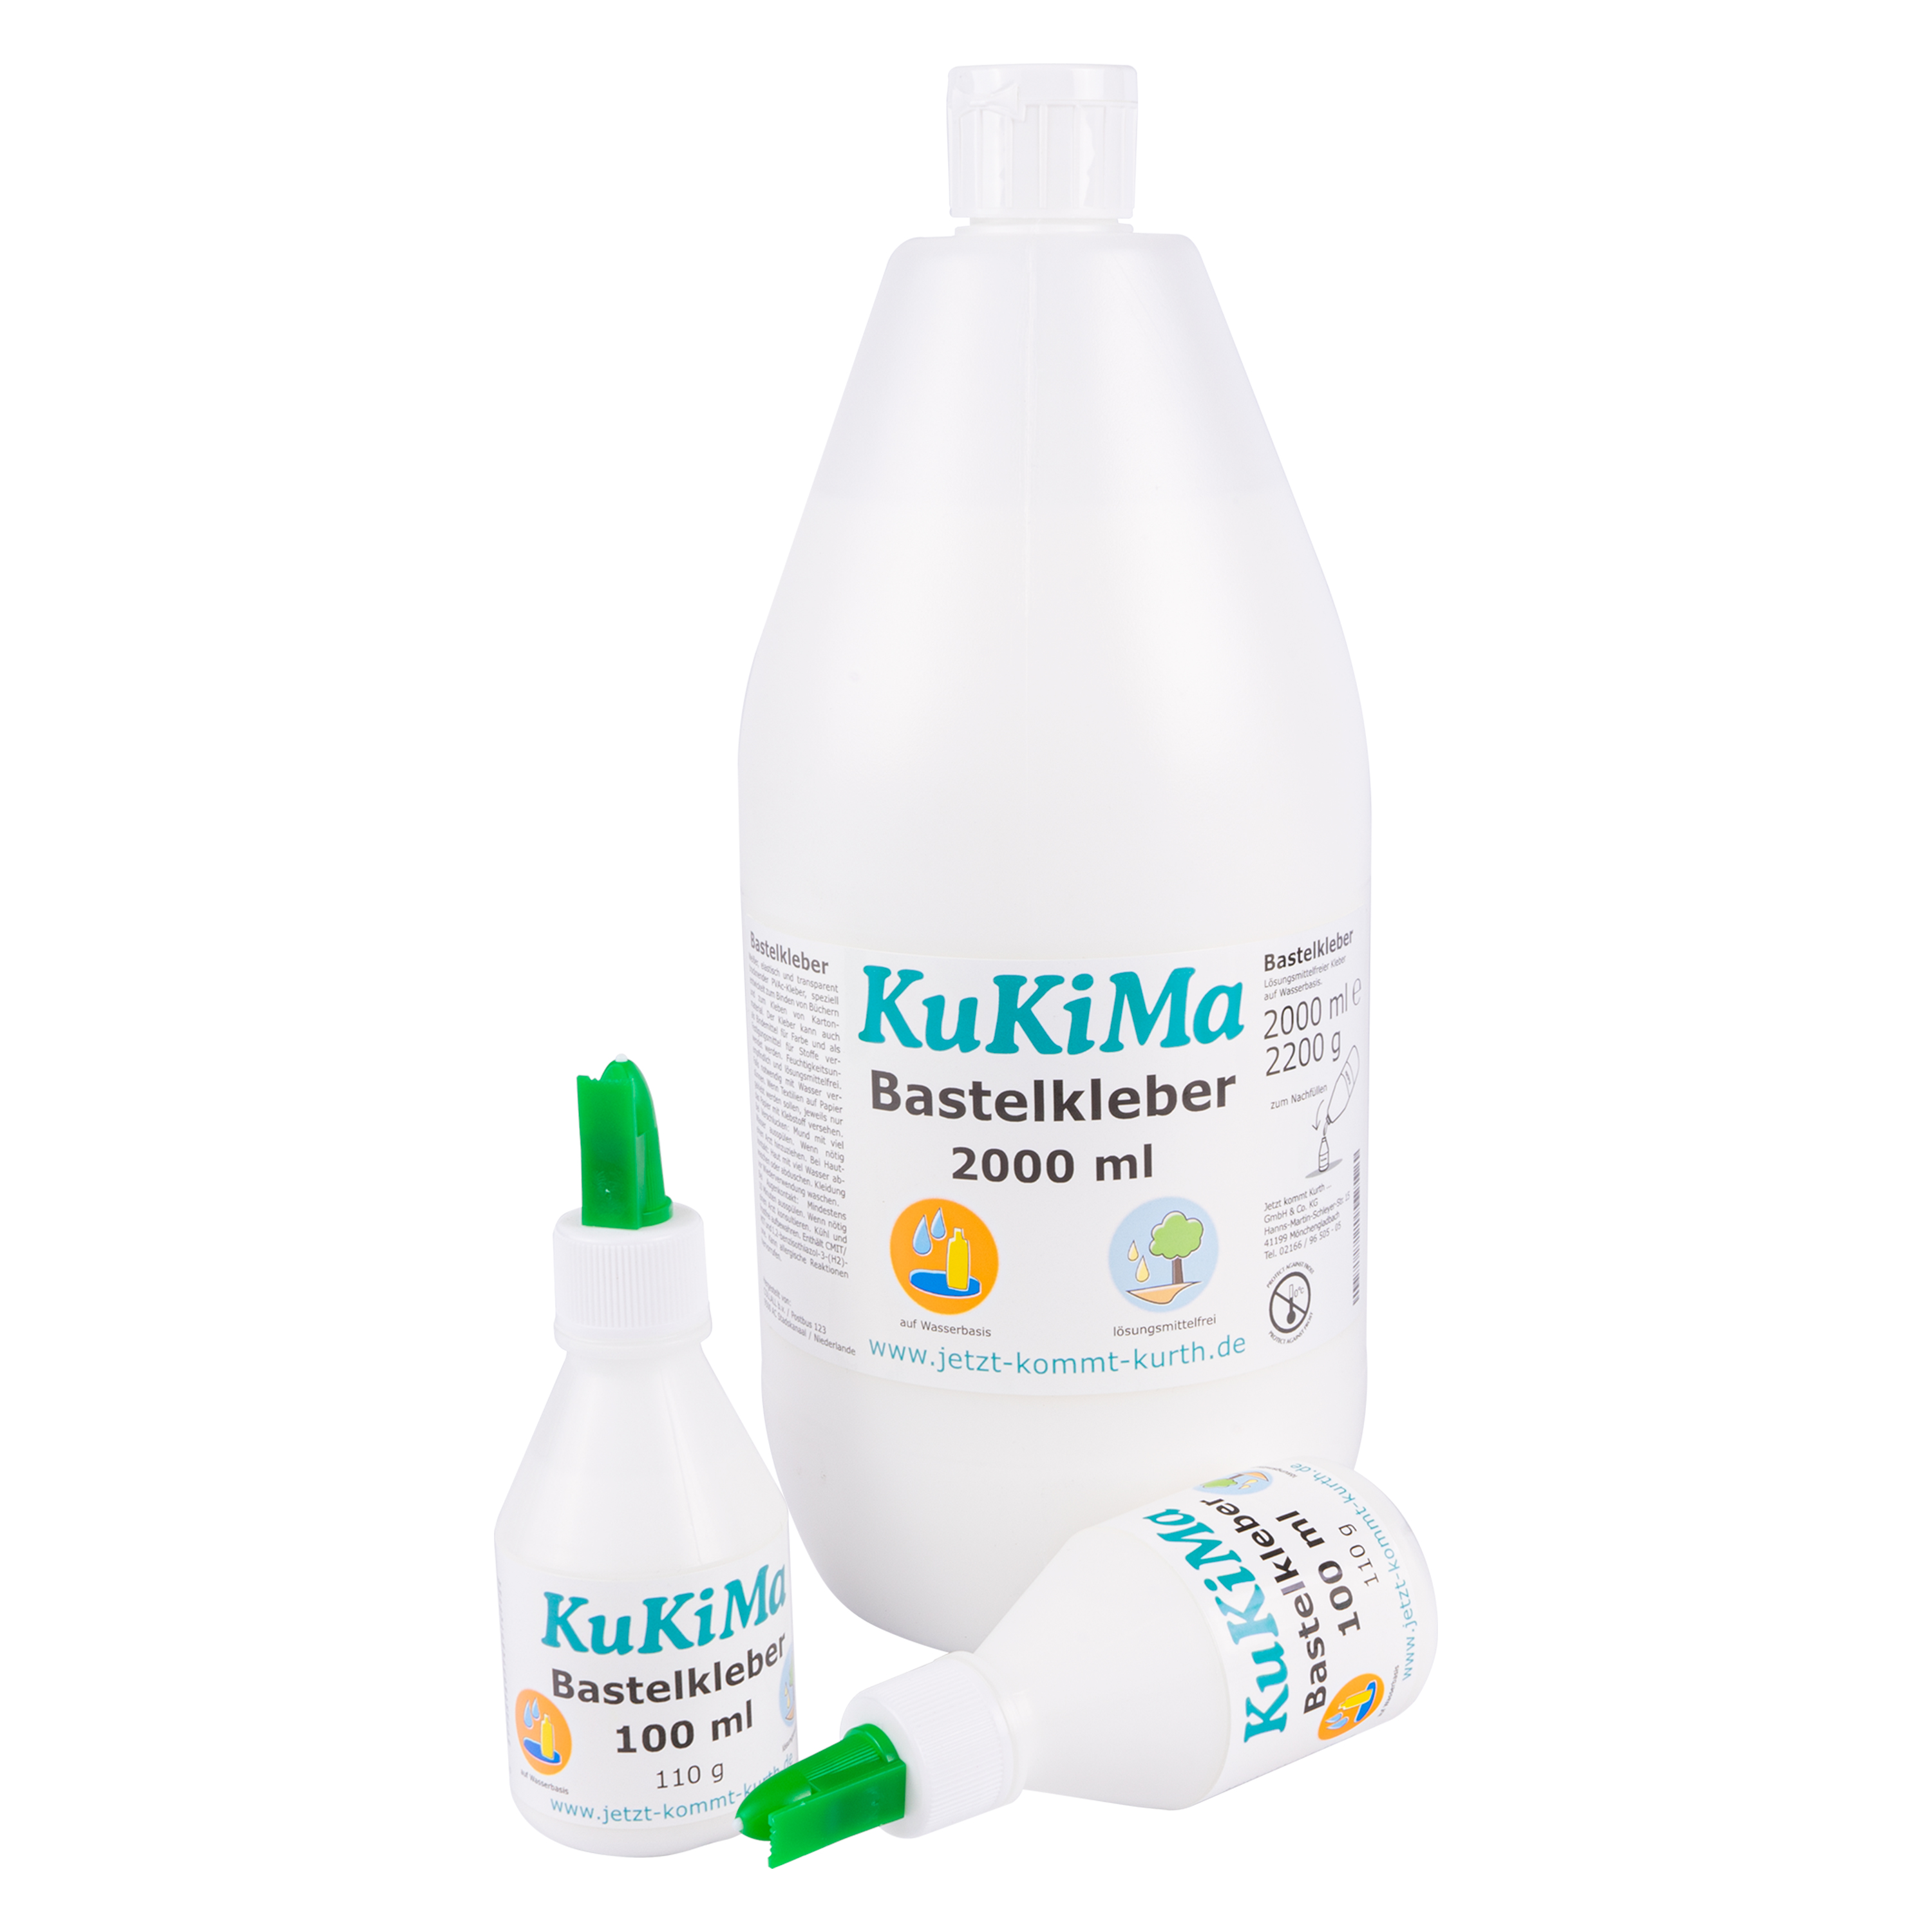 KuKiMa Bastelkleber Test-Set, 2200 ml lösungsmittelfrei